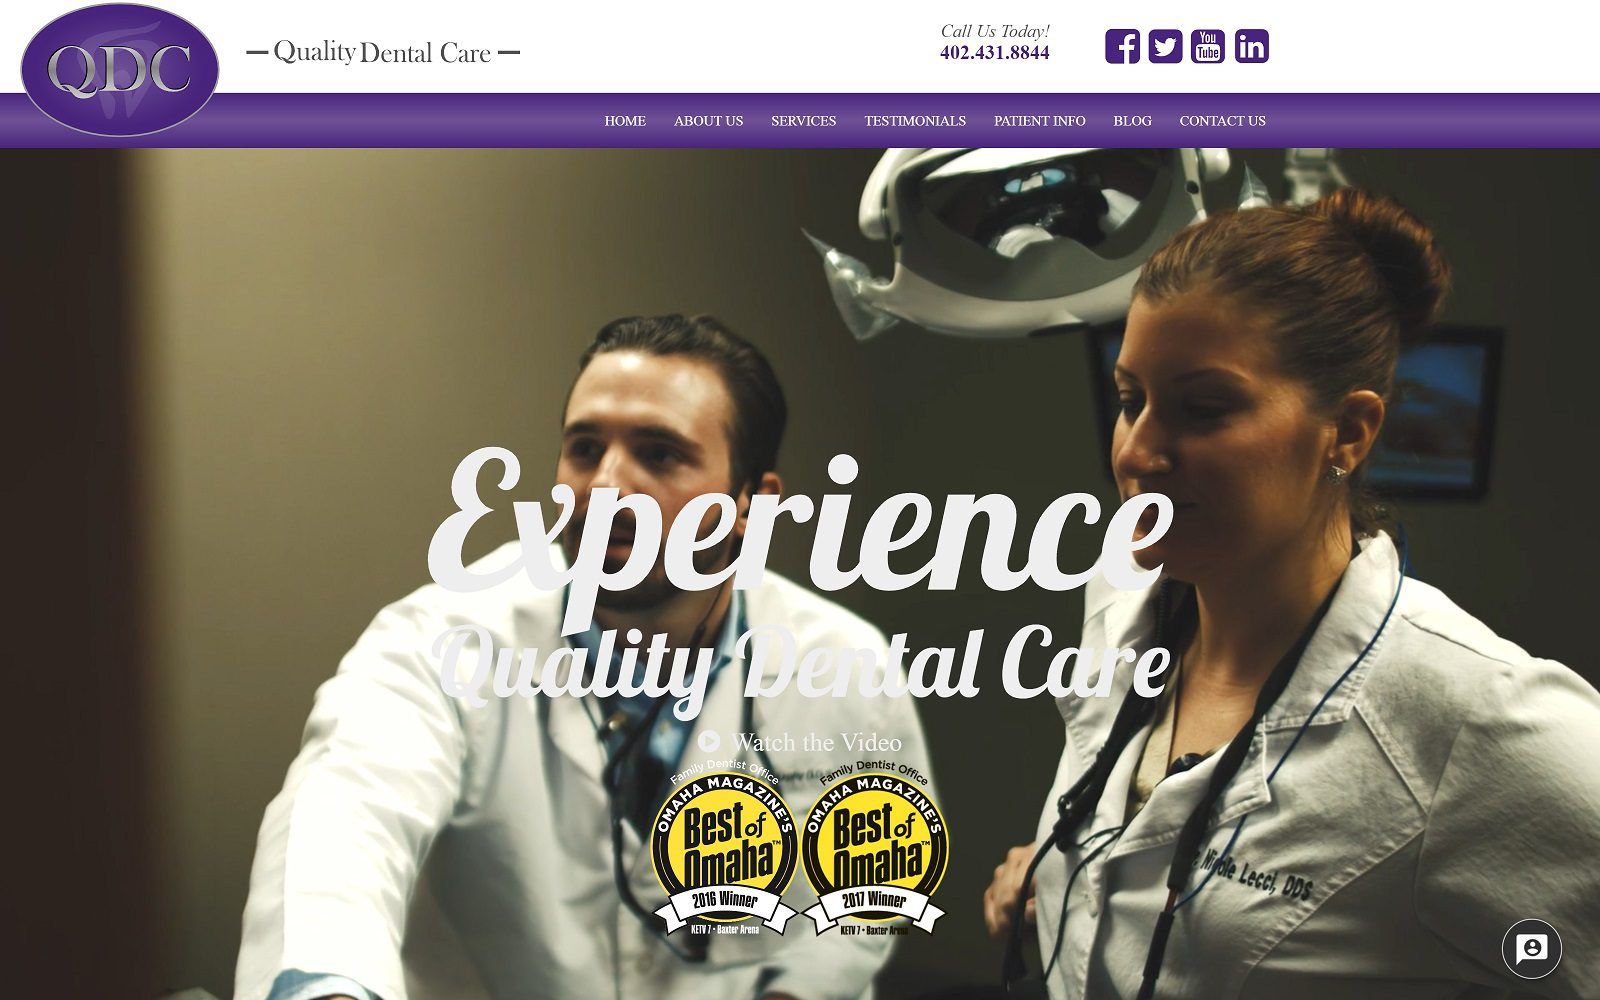 The Screenshot of Quality Dental Care Website